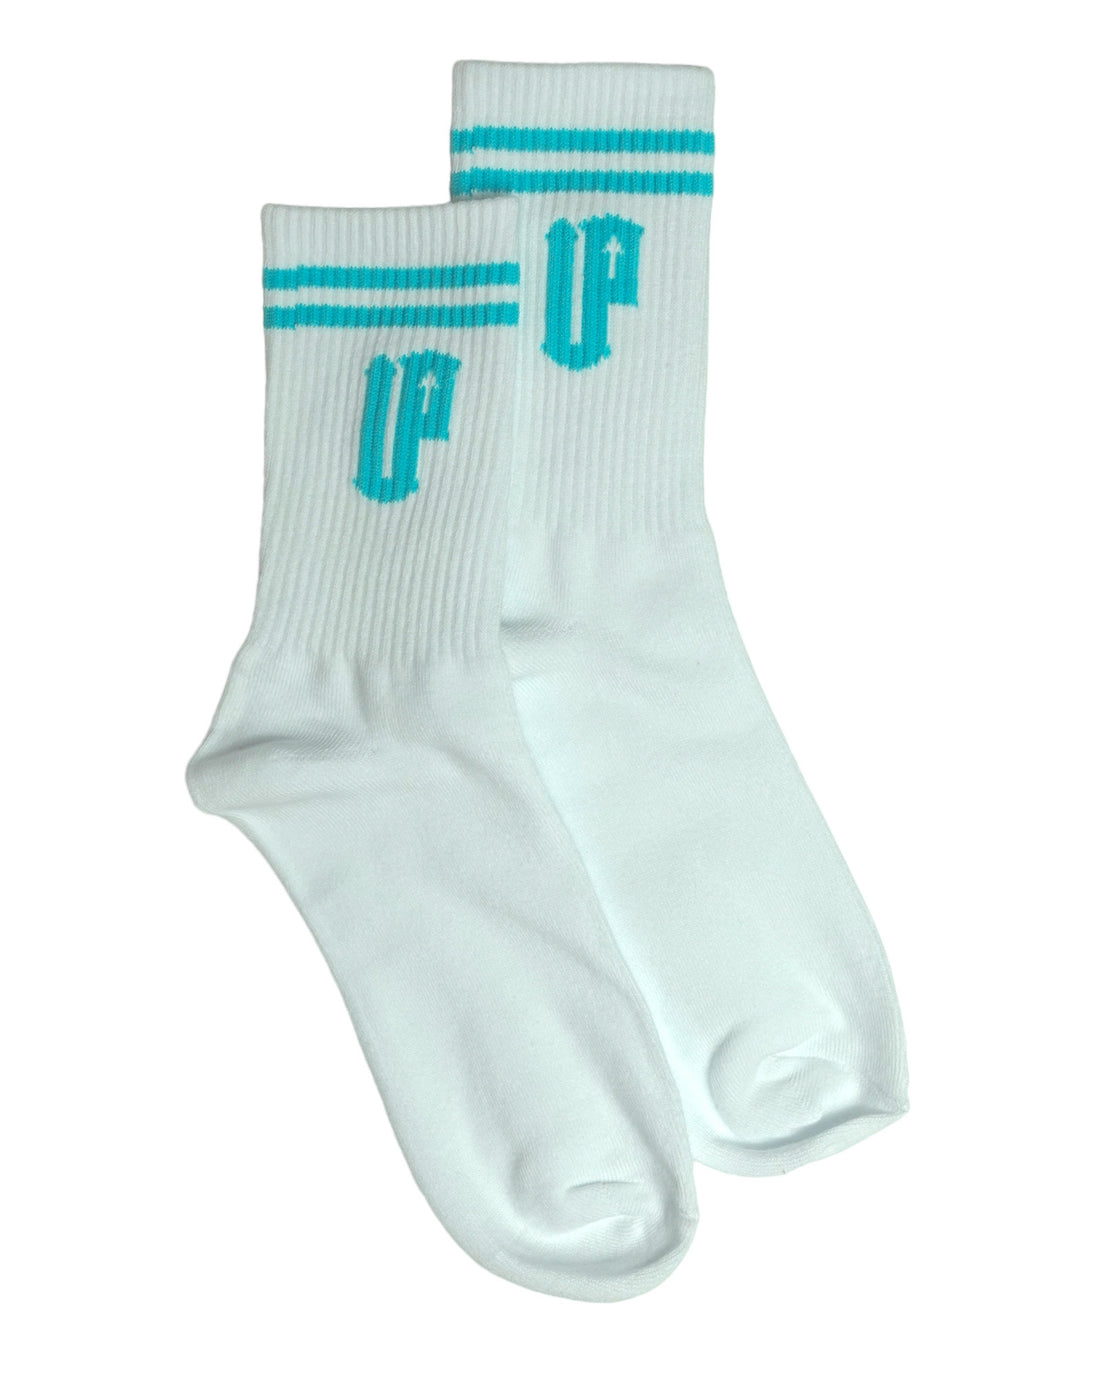 Double Up Socks - White/Aquamarine Blue